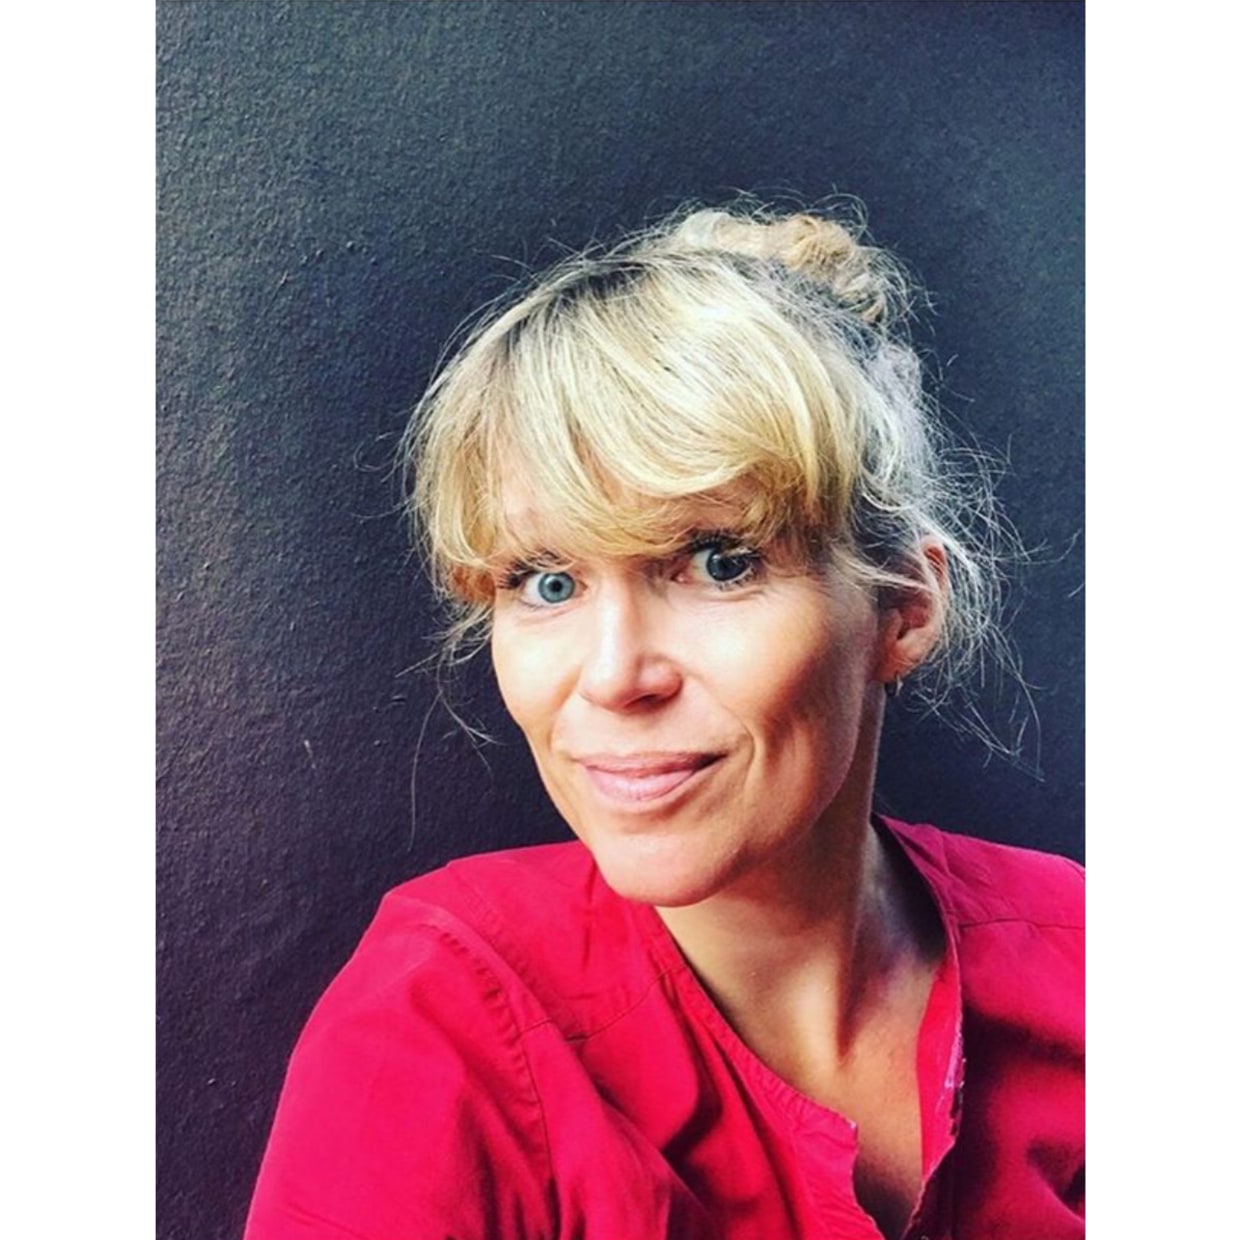 策展人：尼娜·斯特兰德(Nina Strand) Objektiv Press策展人、编辑（挪威奥斯陆）